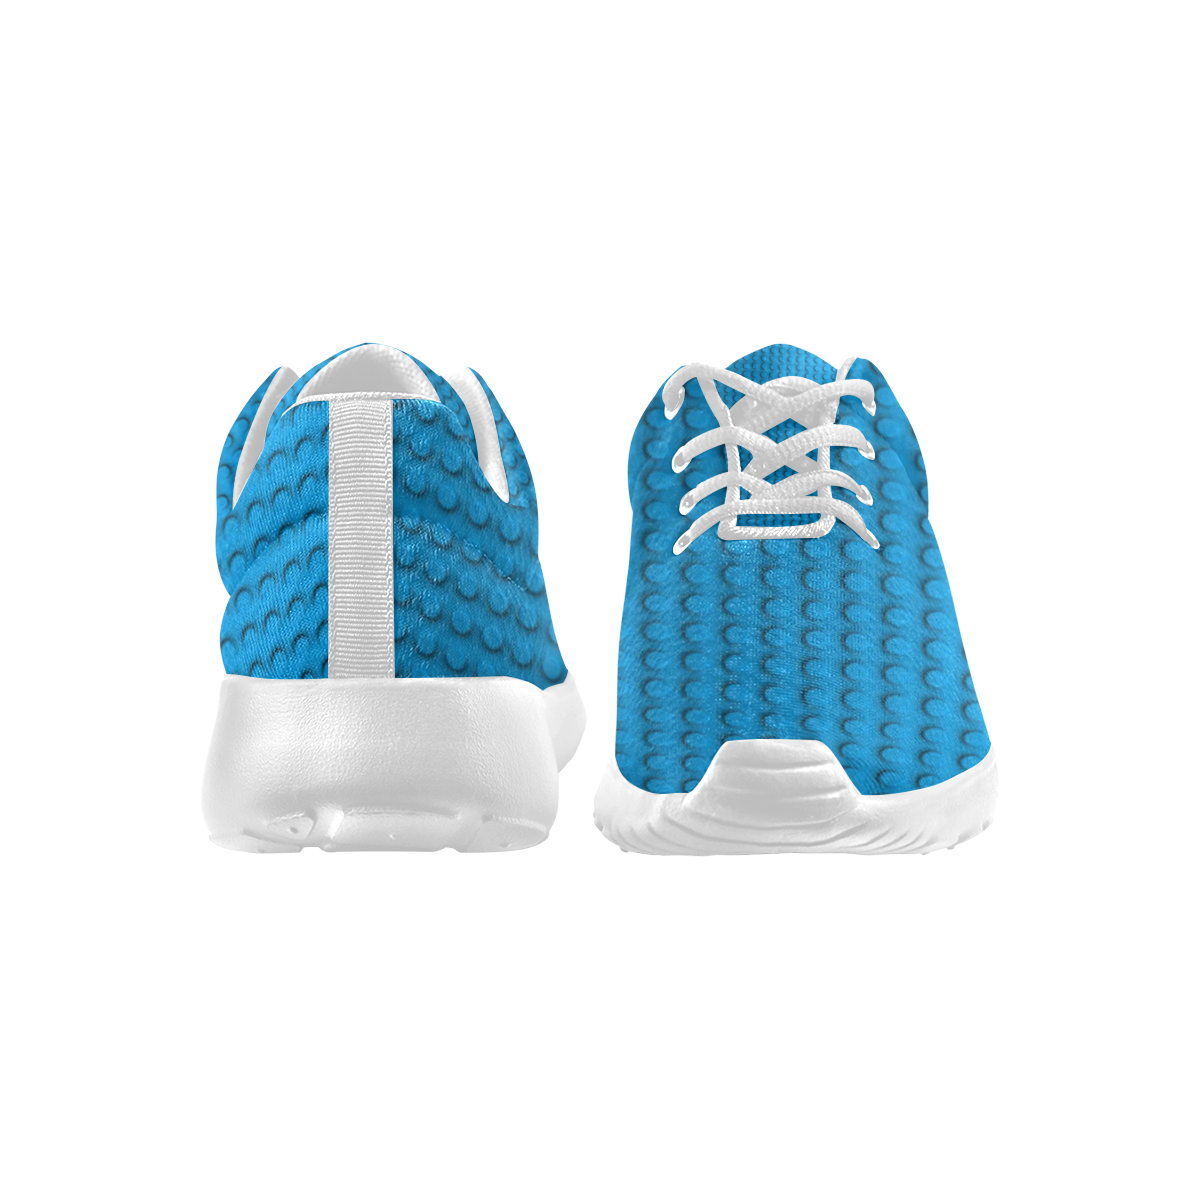 PLASTIC Men's Athletic Shoes (Model 0200)